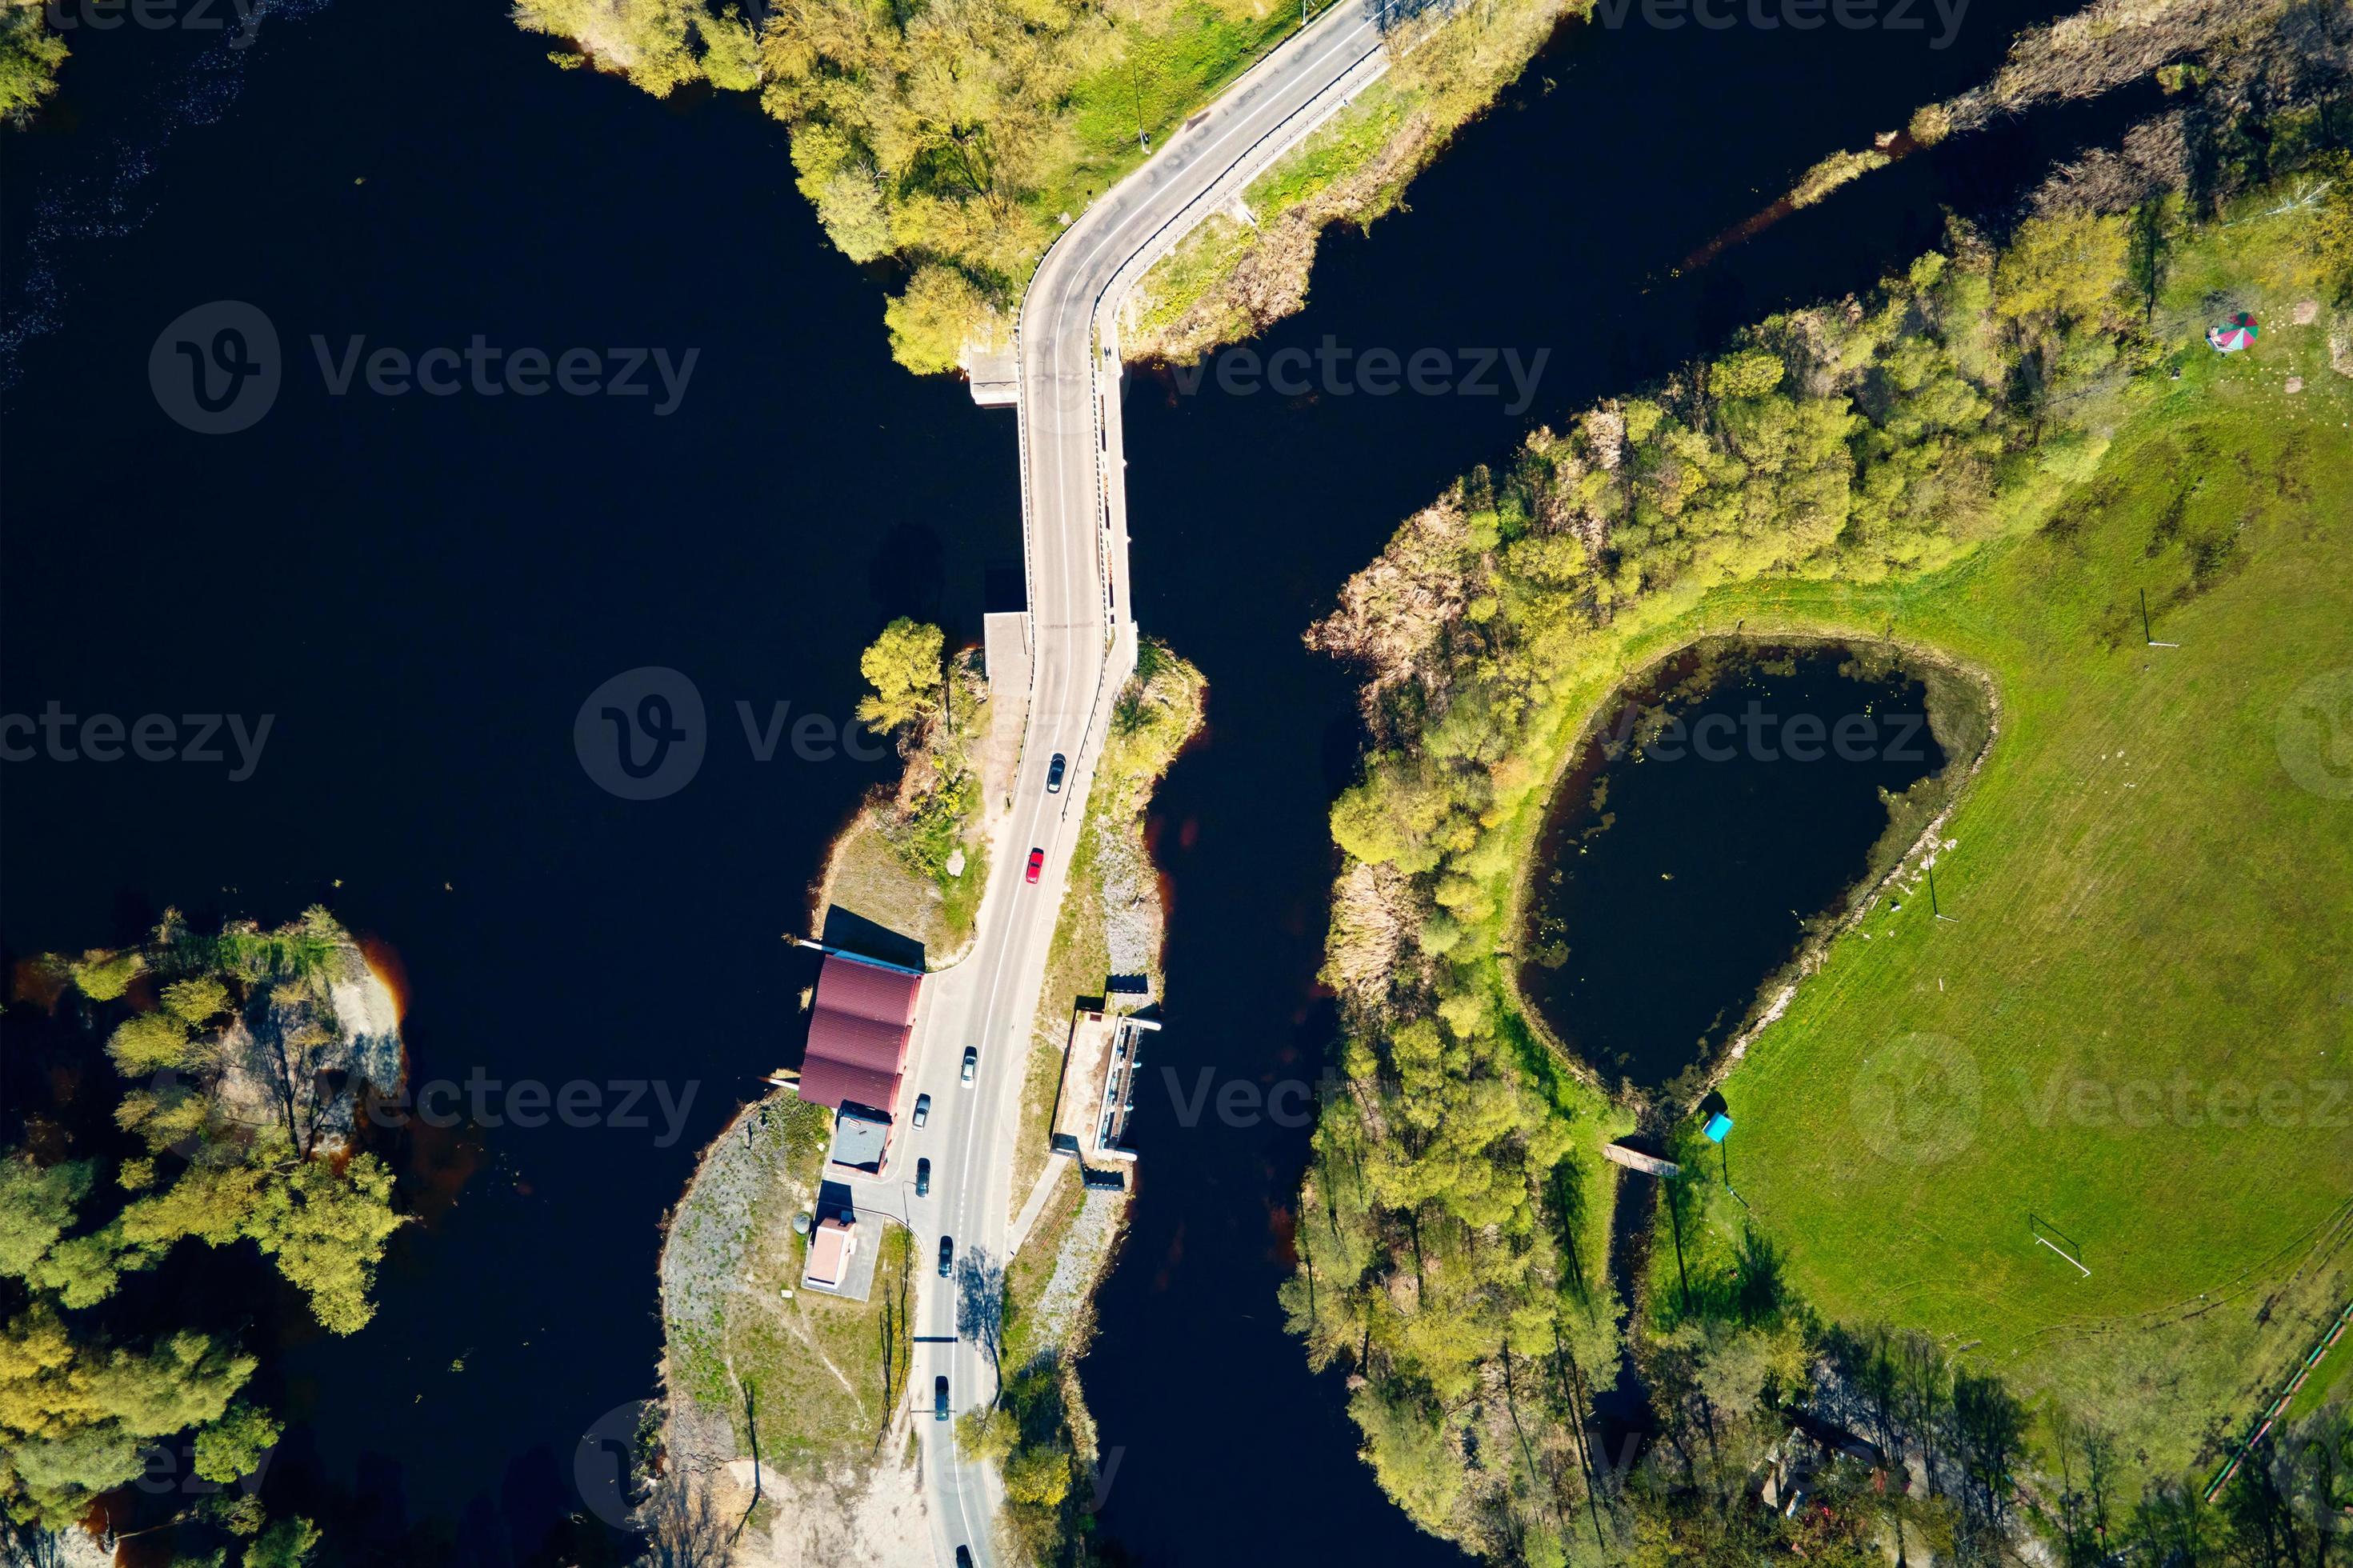 Onrechtvaardig Deens Invloedrijk auto in beweging Aan brug in Europa klein dorp, antenne visie 17007813  Stockfoto